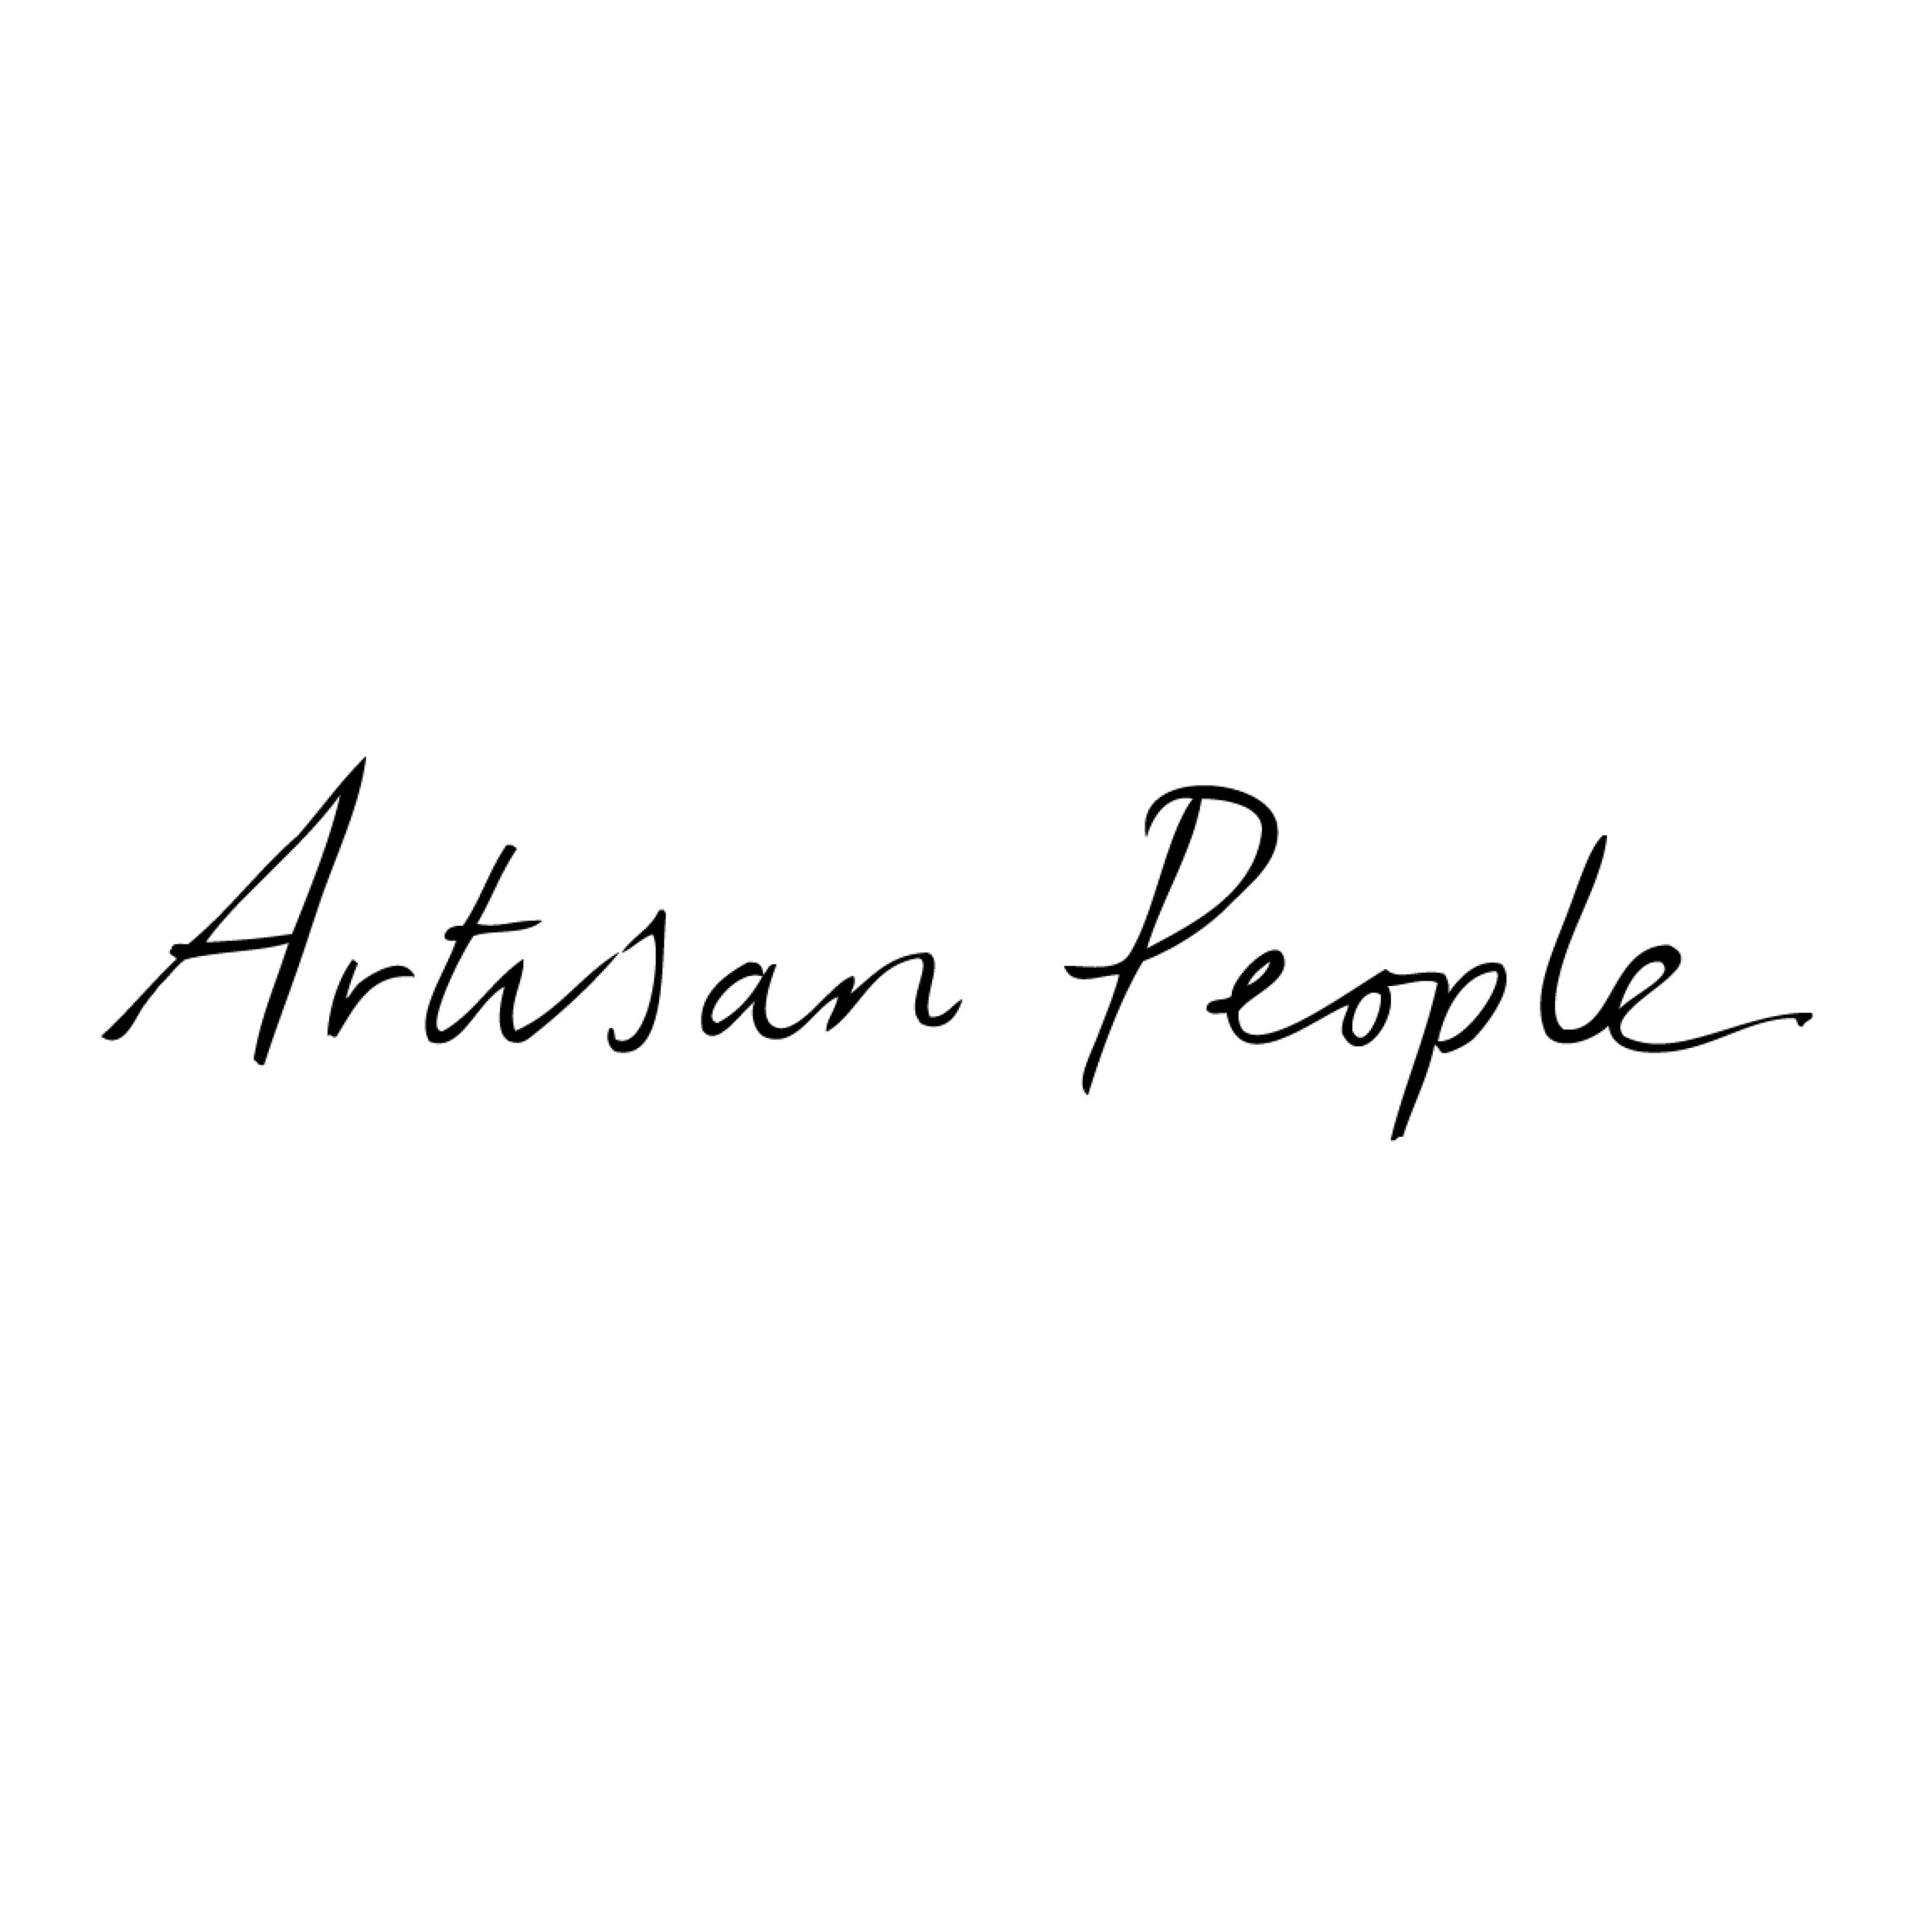 Artisan People